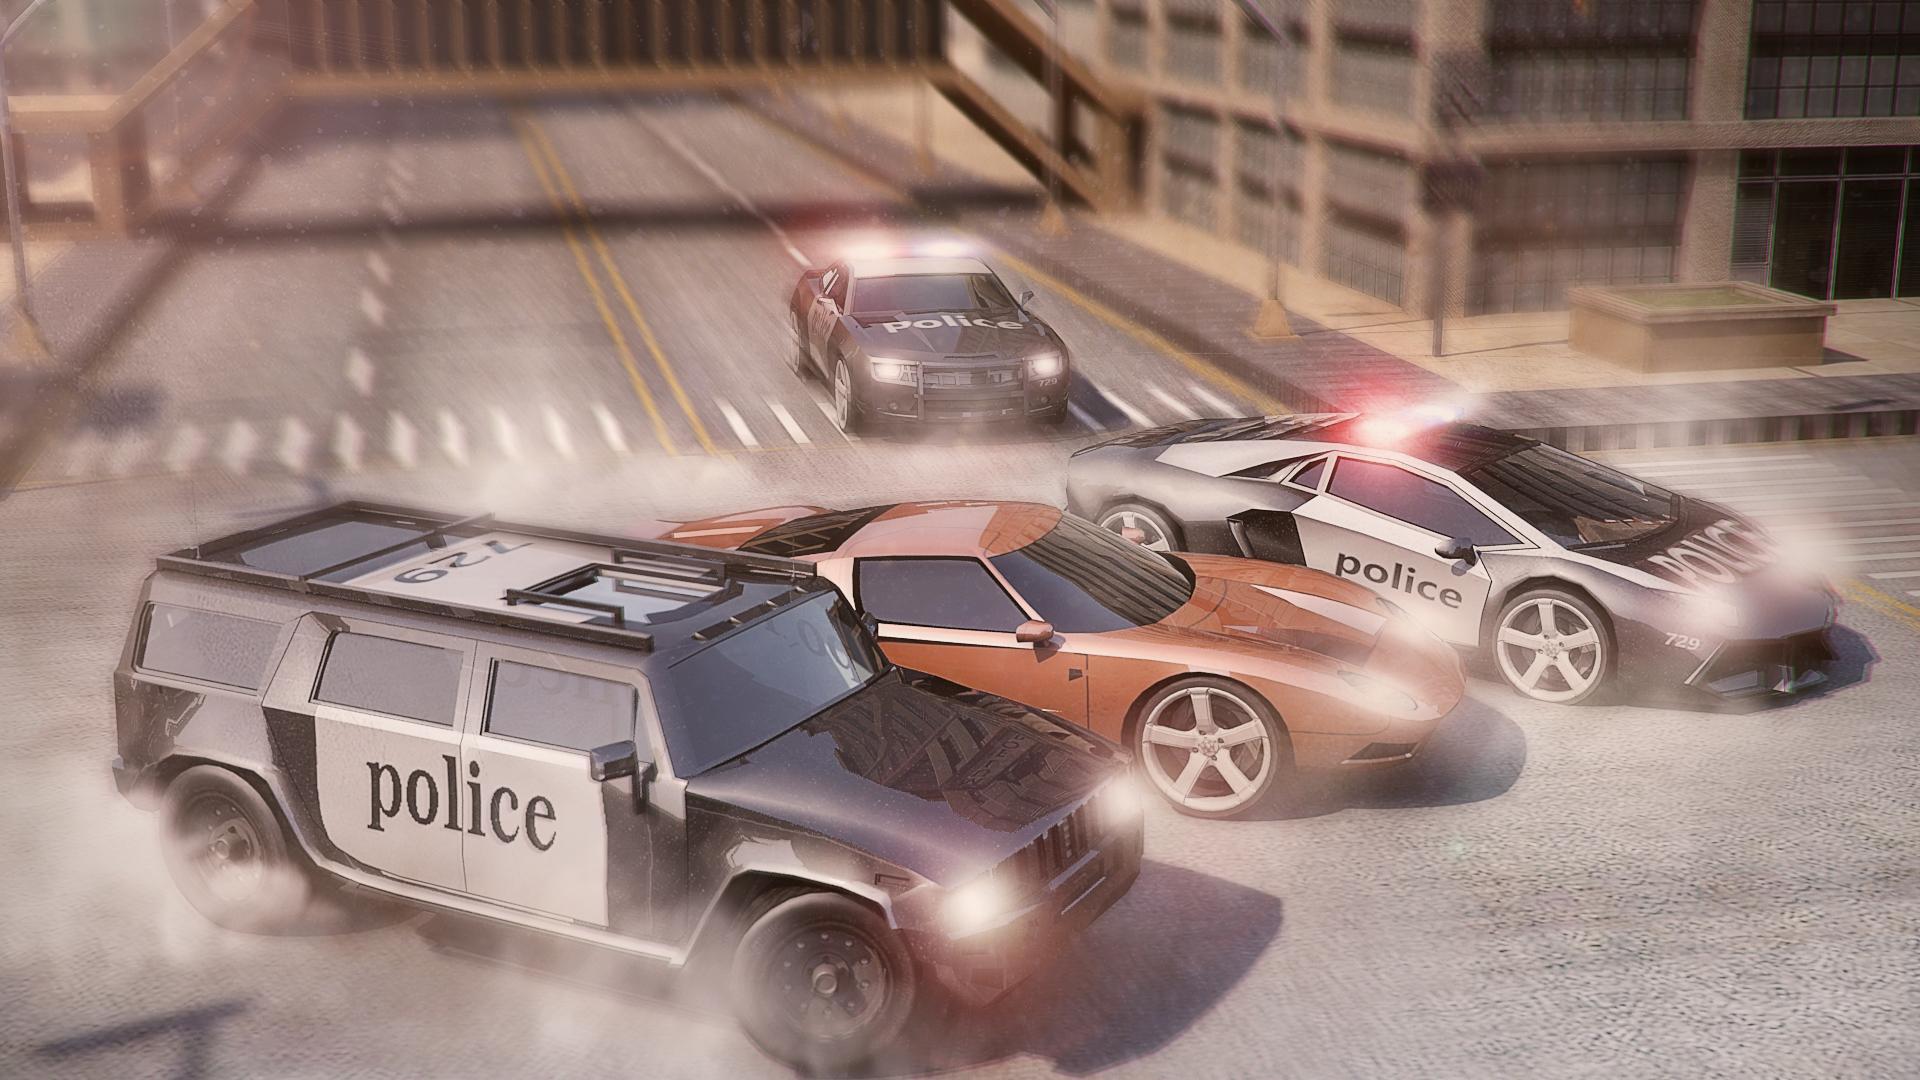 Как играют в погоне. Игра City Police car. Police car Town Chase игра. Полицейская погоня. Погоня полиция в играх.